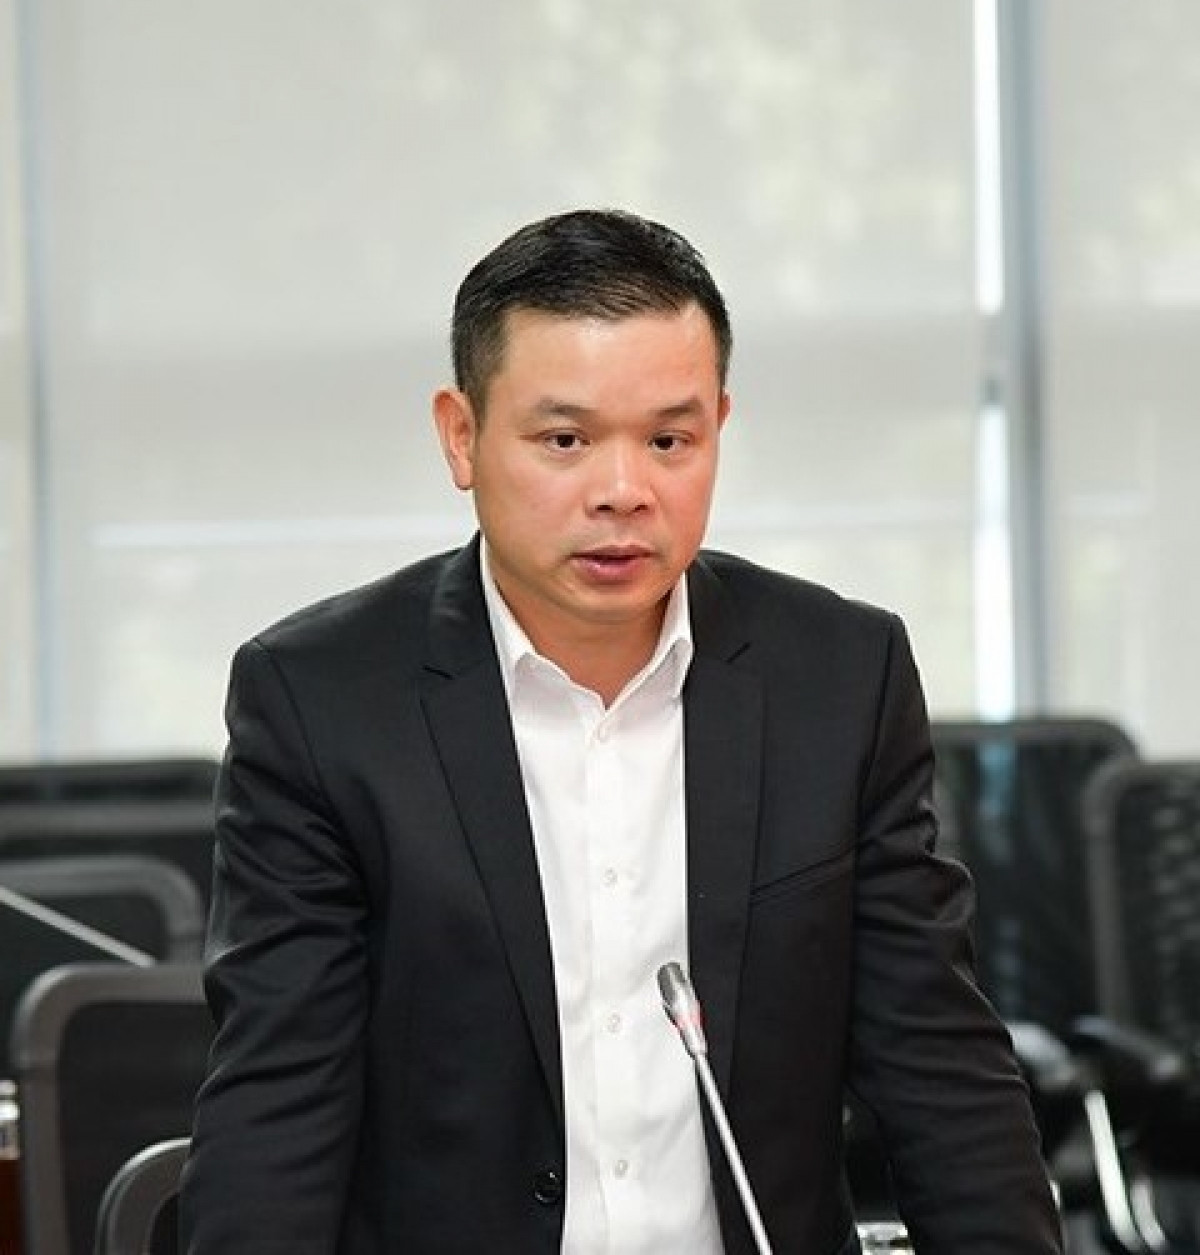 Phó Chủ tịch Ủy ban Quản lý vốn nhà nước tại doanh nghiệp Đỗ Hữu Huy. Ảnh: Báo Chính phủ